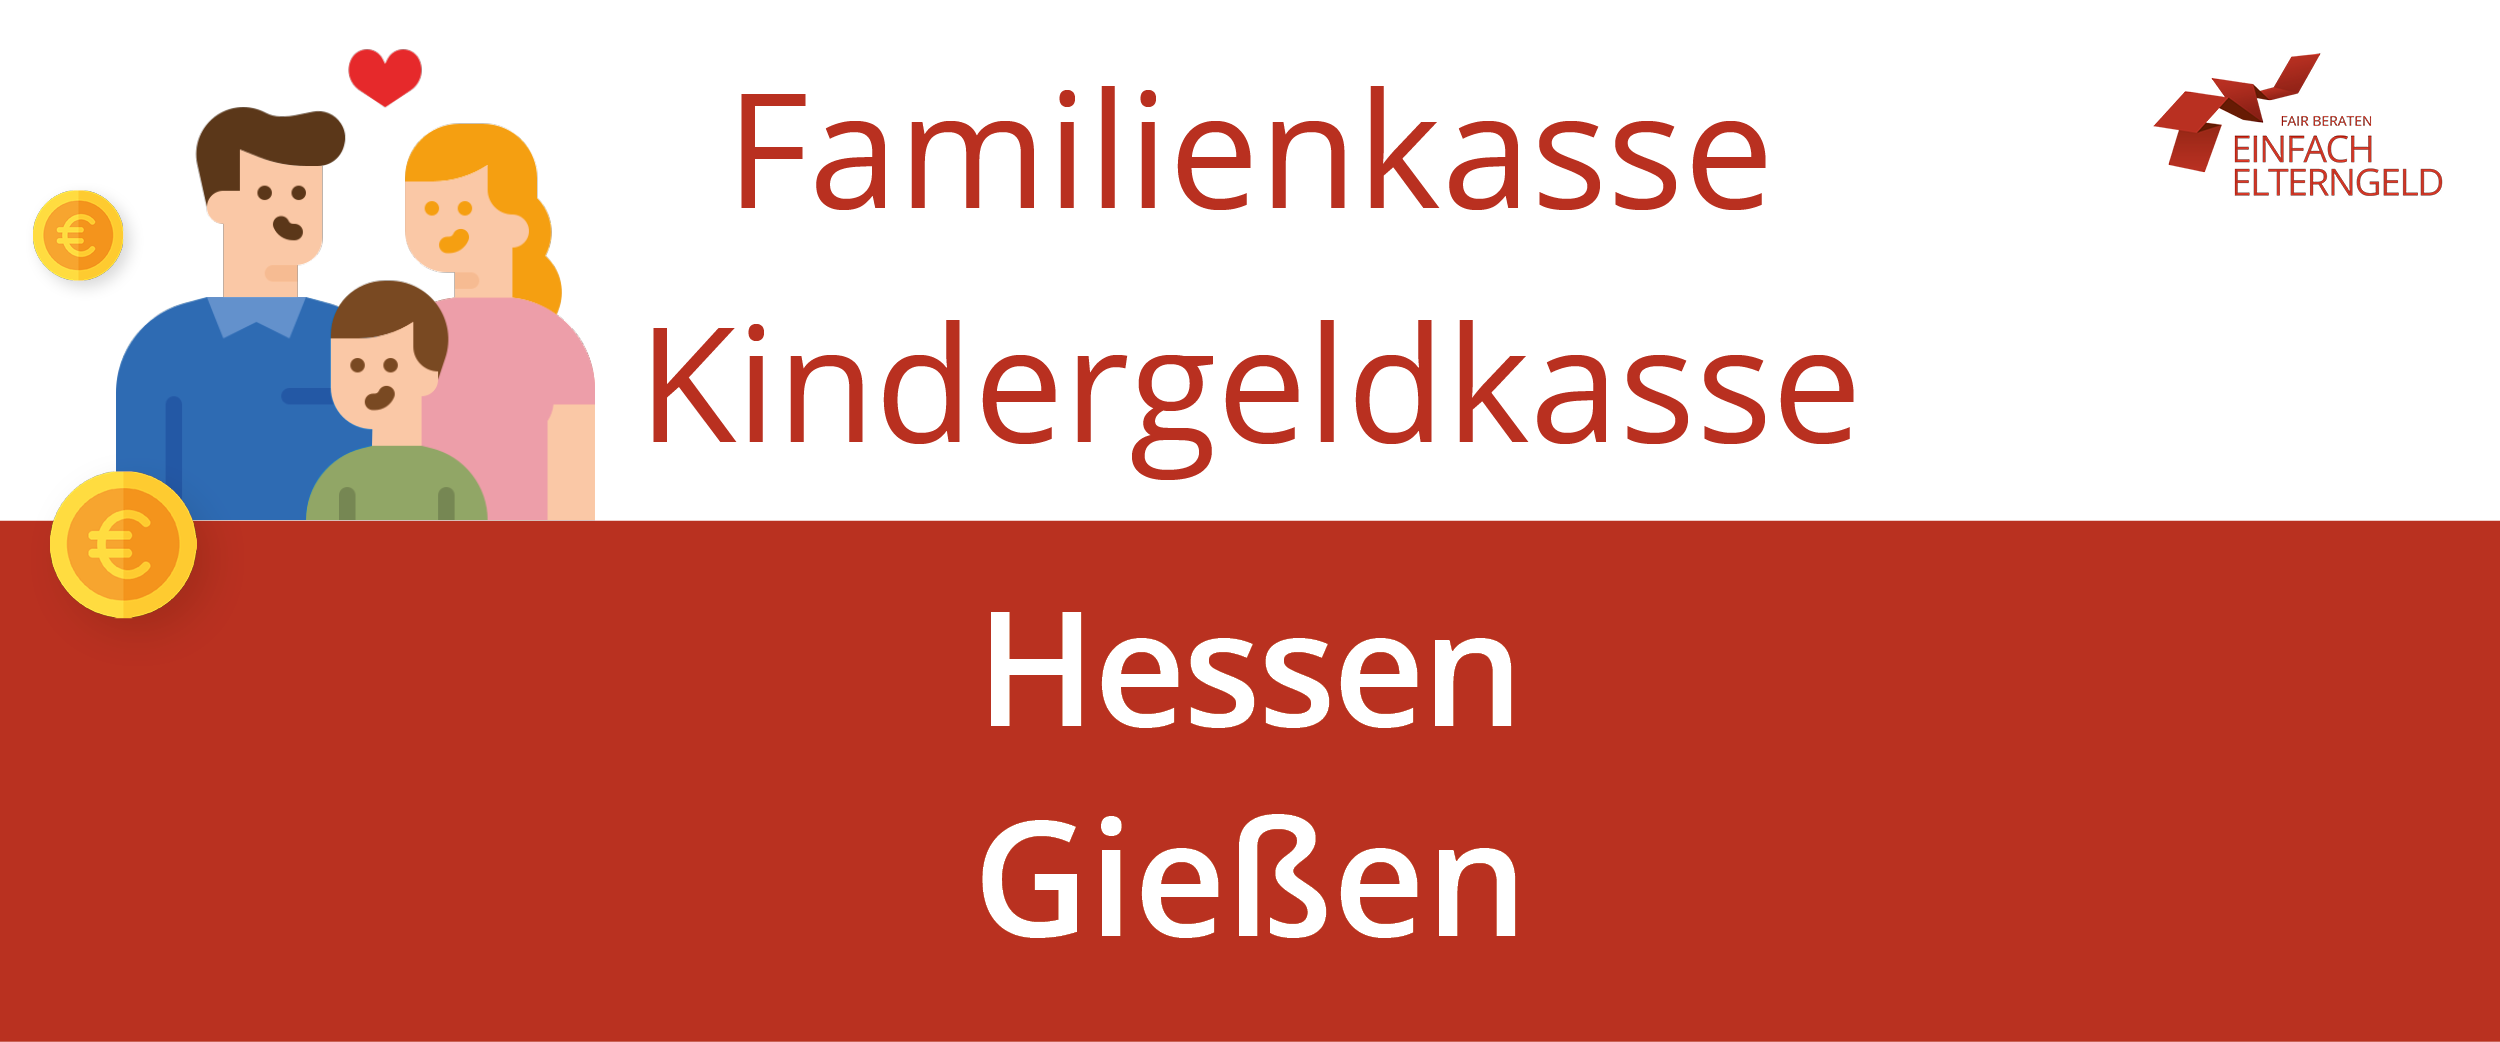 Wir stellen Ihnen die Familienkasse Kindergeldkasse Hessen Giessen vor.